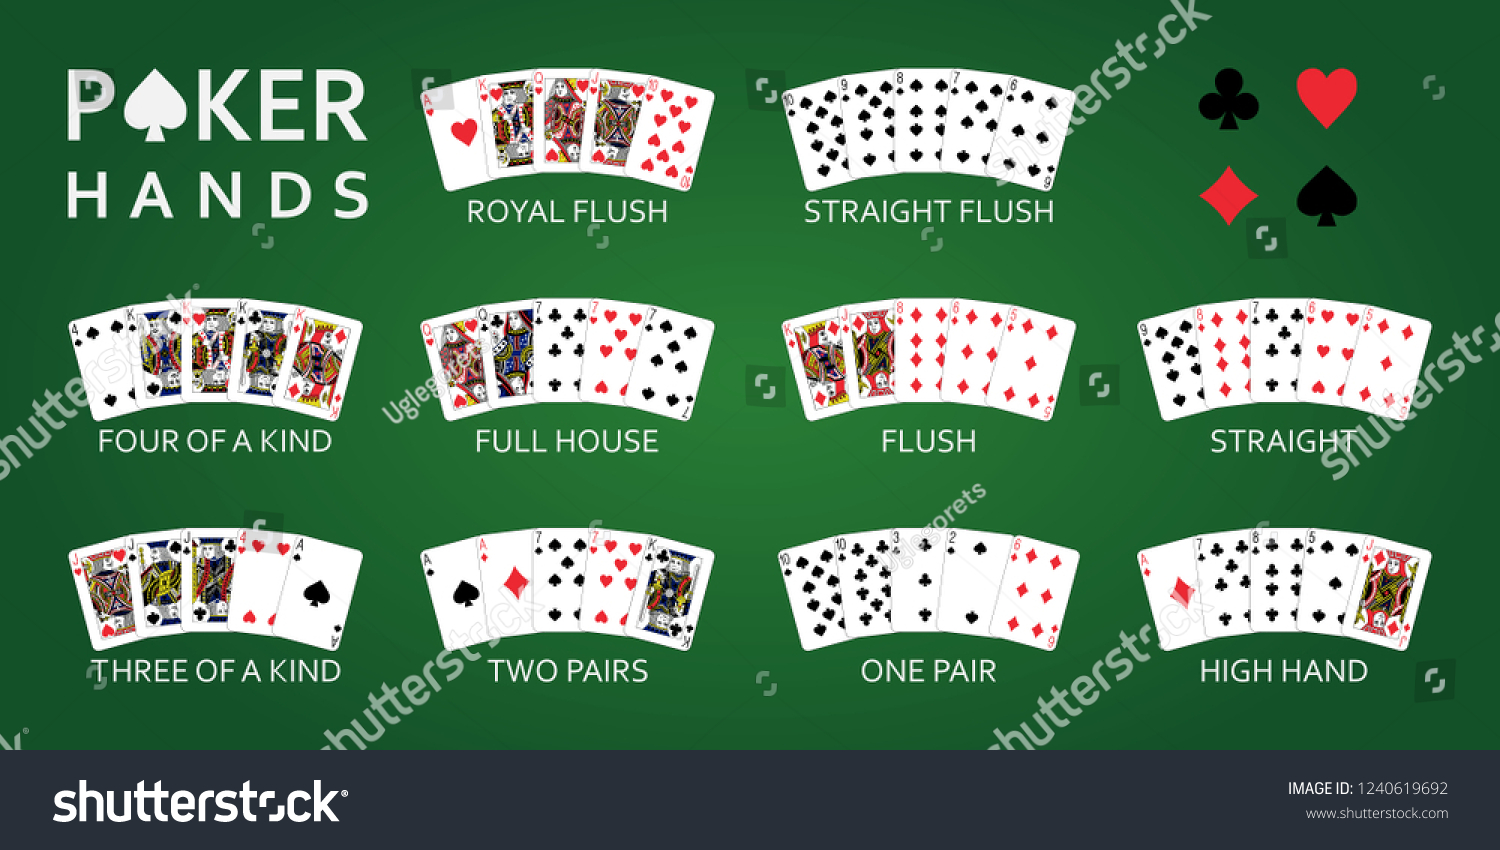 Türkçe Kaçak Poker Siteleri Logo